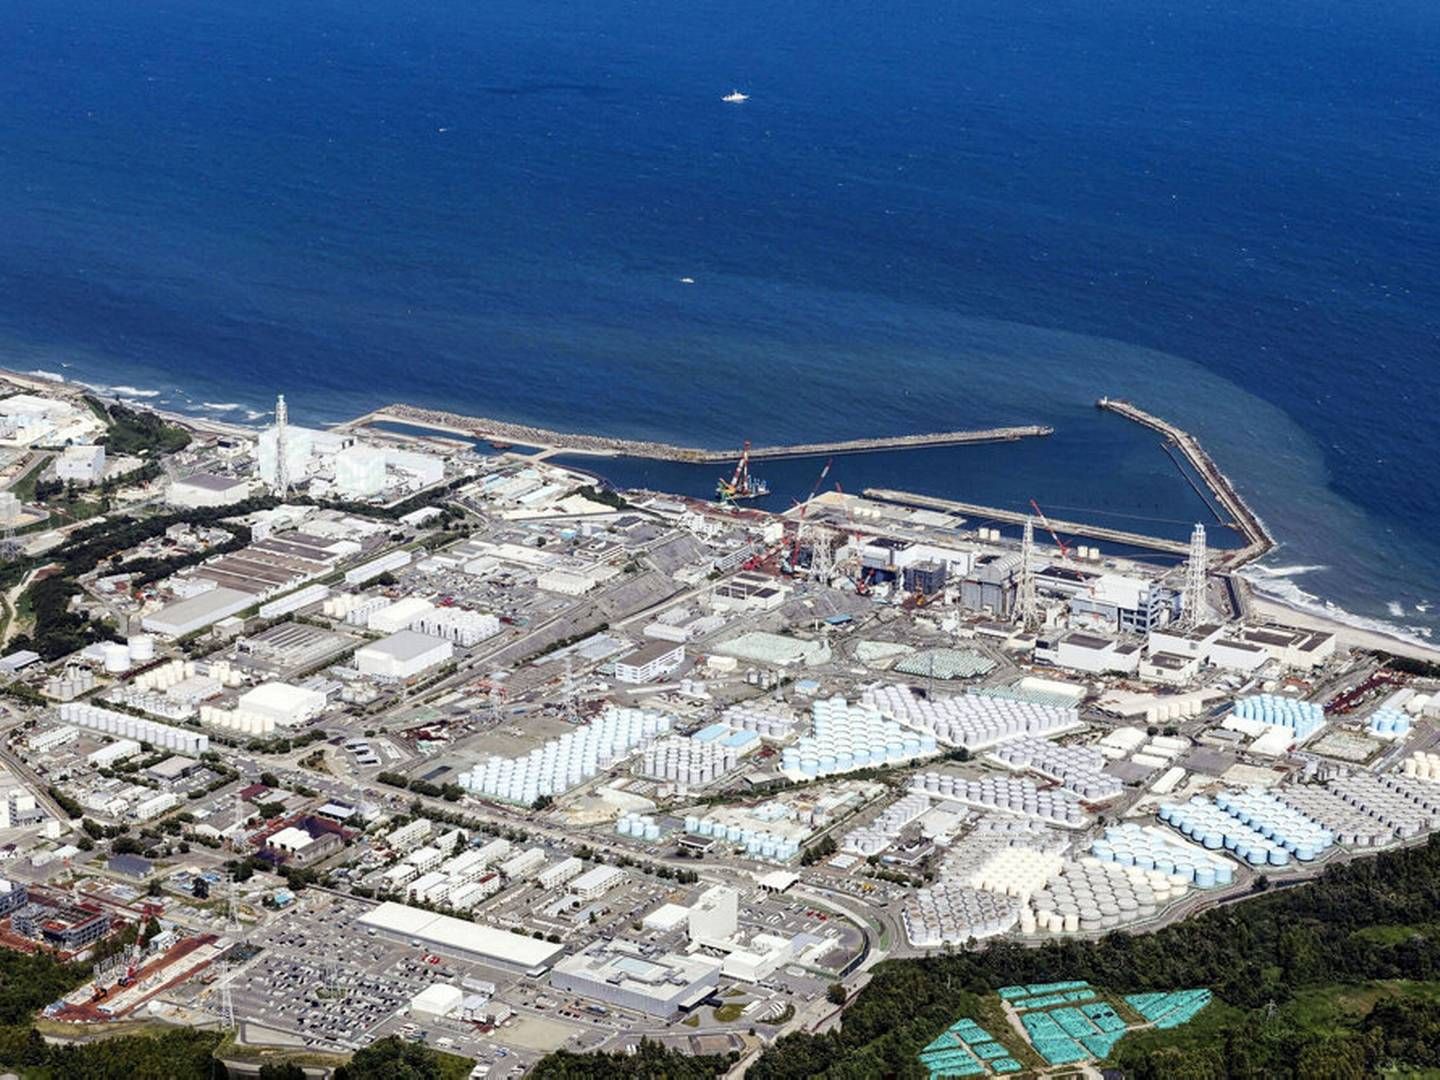 Sådan ser atomkraftværket Fukushima ud fra oven. Kraftværket blev ødelagt i forbindelse med jordskælv i 2011. | Foto: Kyodo/reuters